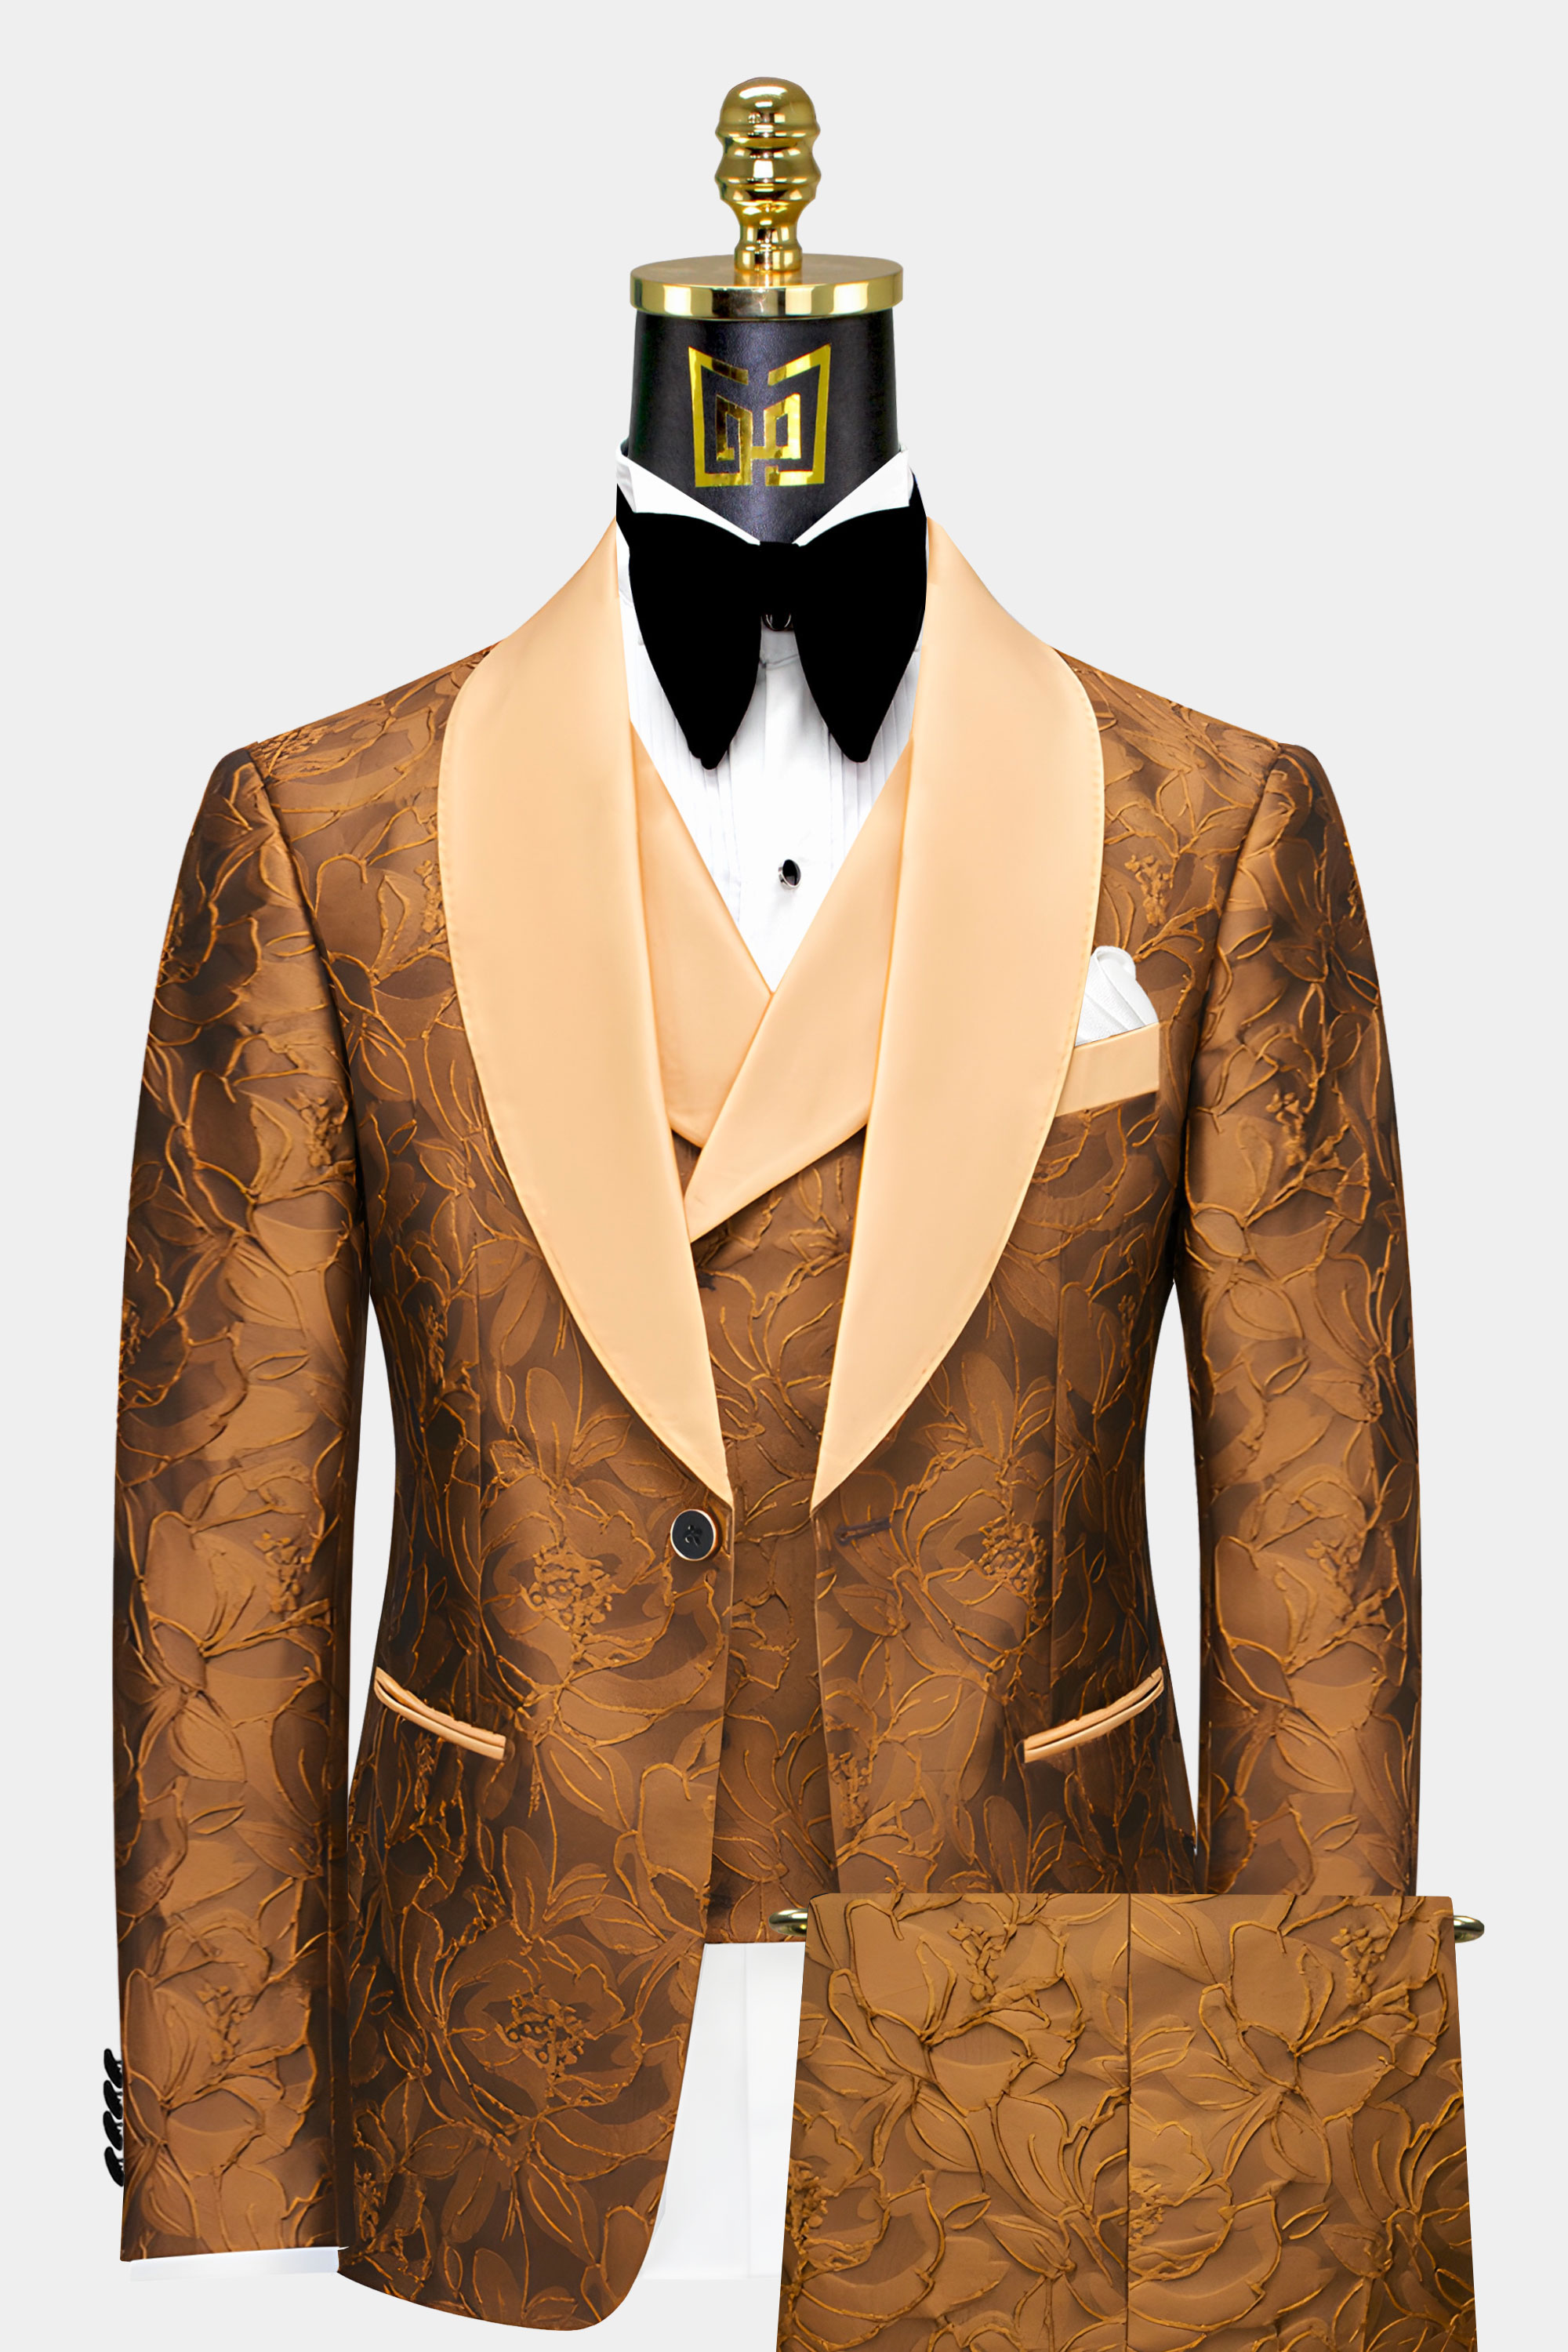 Mens-Pecan-Brown-Tuxedo-Suit)Groom-Wedding-Tuxedo-Prom-For-Men-from-Gentlemansguru.com